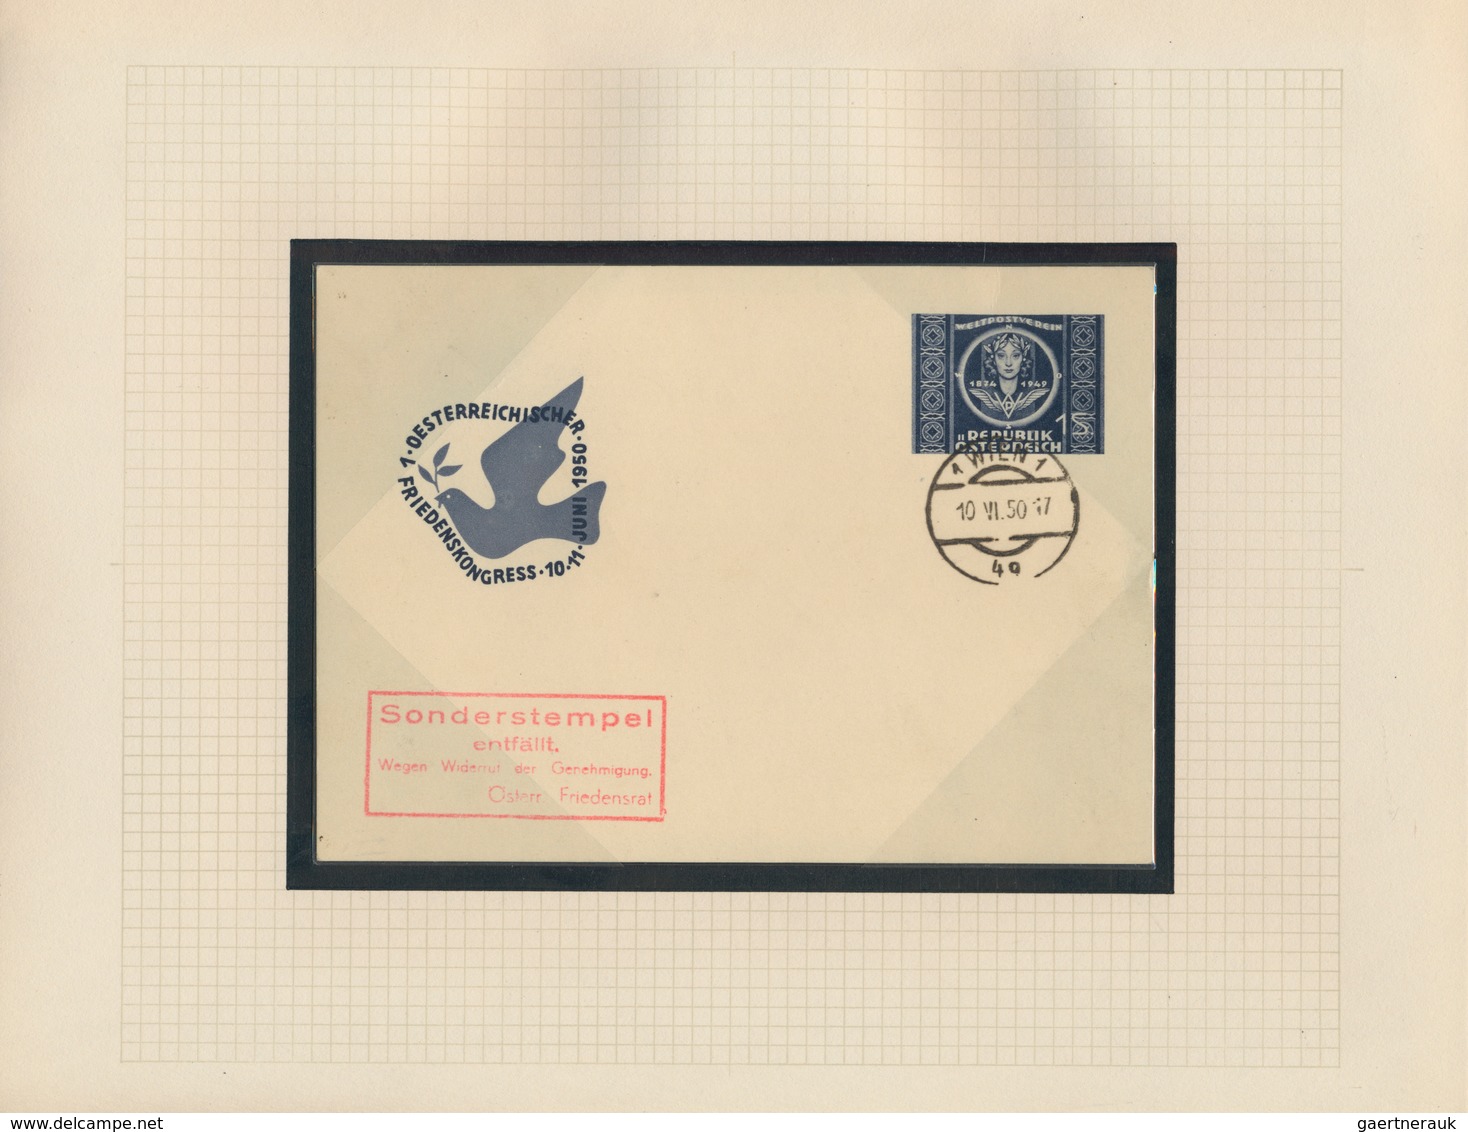 Thematik: UPU / united postal union: 1949, 75 Jahre UPU, saubere Sammlung mit ungebrauchten Ausgaben